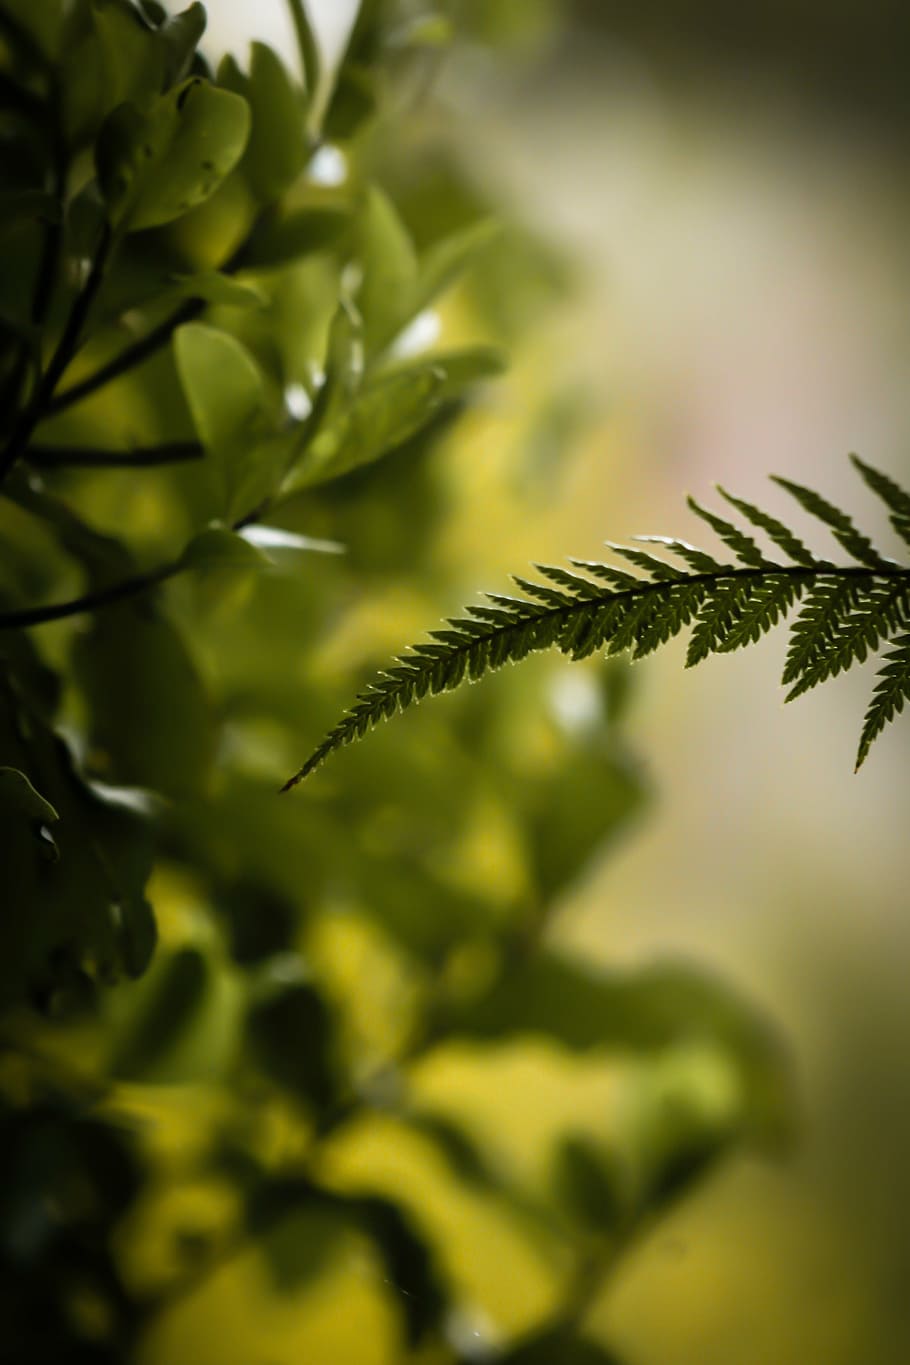 Green leaf - một chủ đề không bao giờ lỗi thời cho người yêu thích thiên nhiên. Bạn sẽ tìm thấy những chi tiết tuyệt mỹ về tự nhiên và một màu xanh tươi tắn sẽ mang đến cho bạn sự thư giãn.